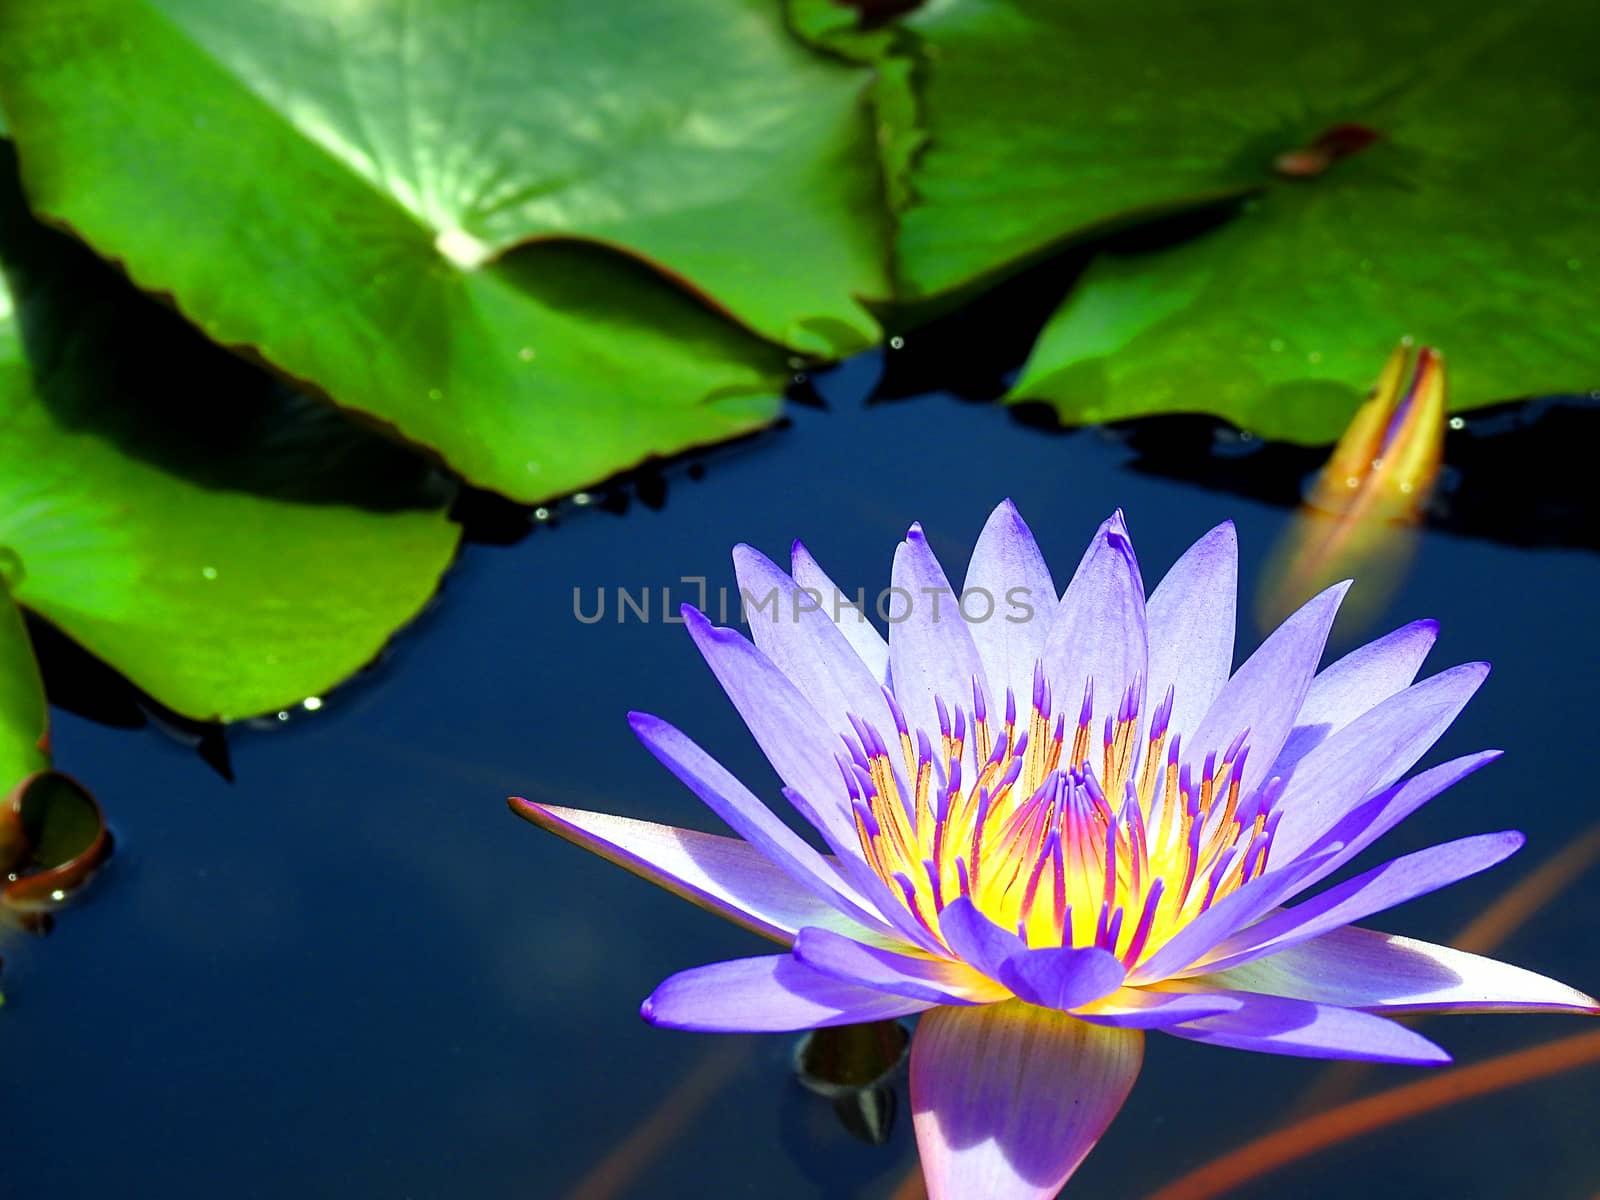 Flower lotus blooming in pond.